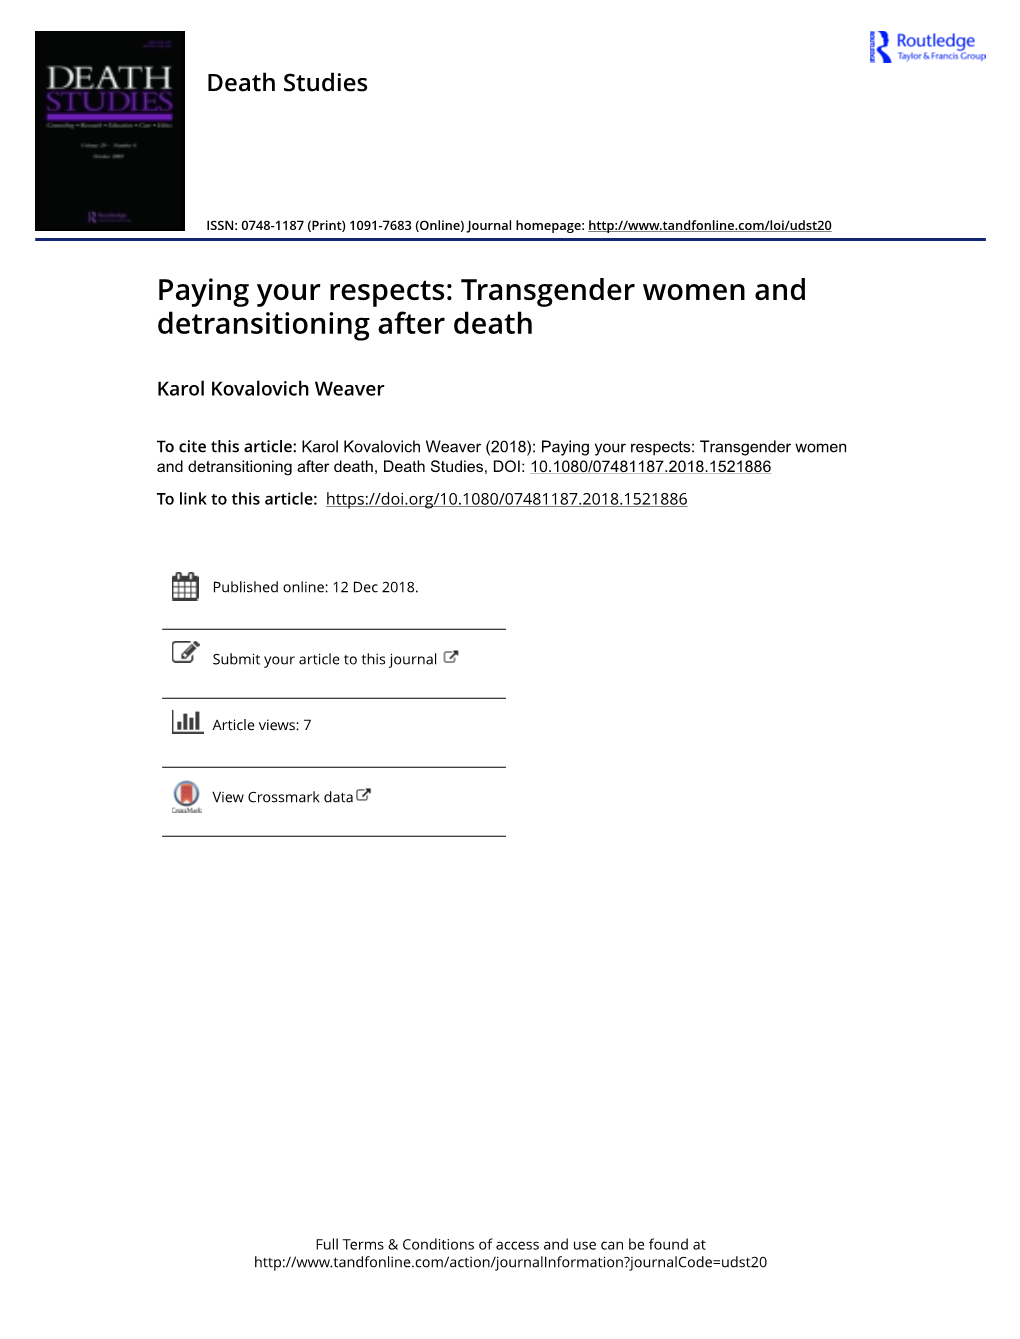 Transgender Women and Detransitioning After Death